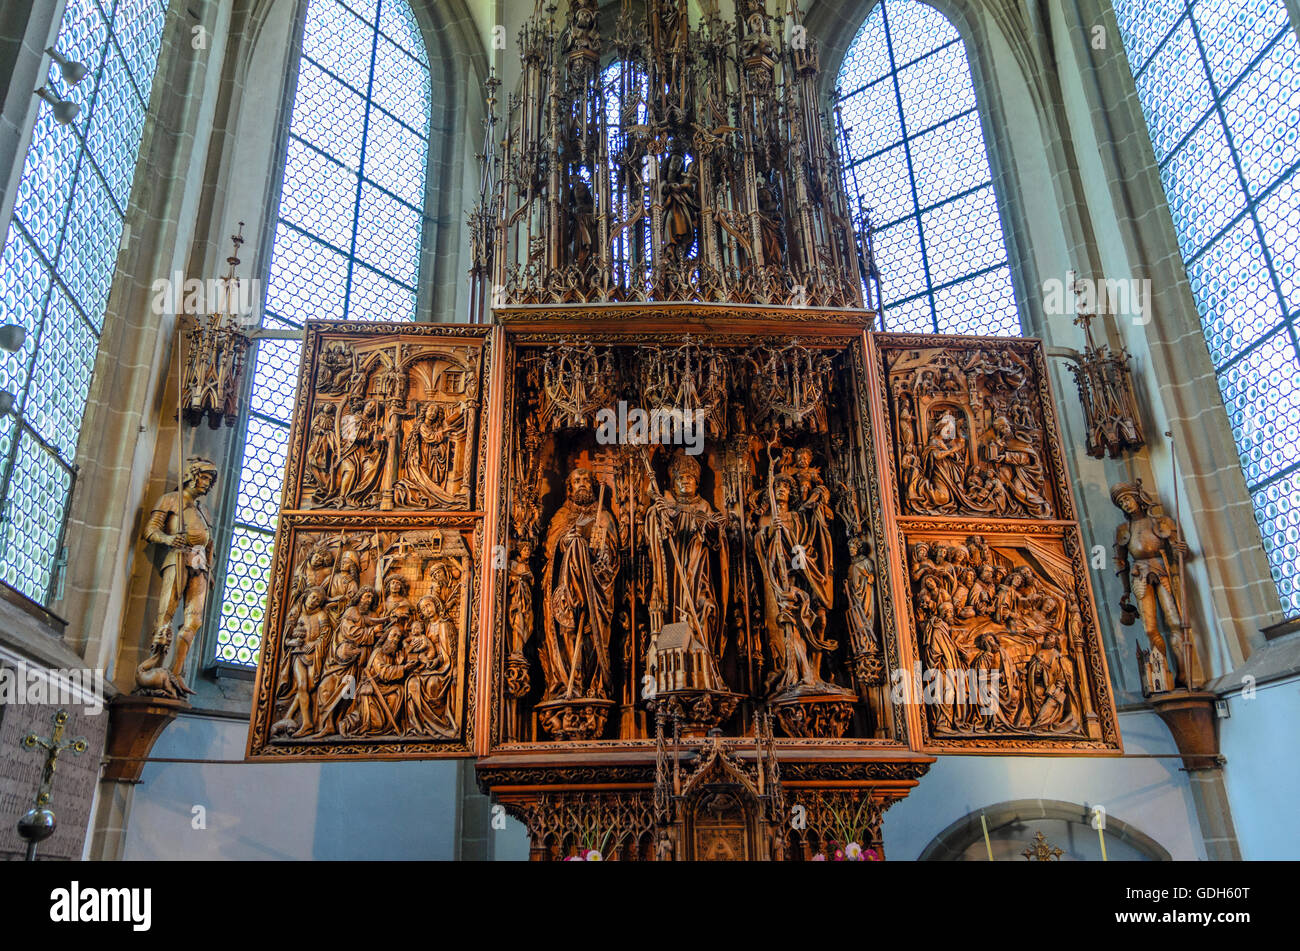 Kefermarkt: Kefermarkt winged altar in church, Austria, Oberösterreich, Upper Austria, Mühlviertel Stock Photo